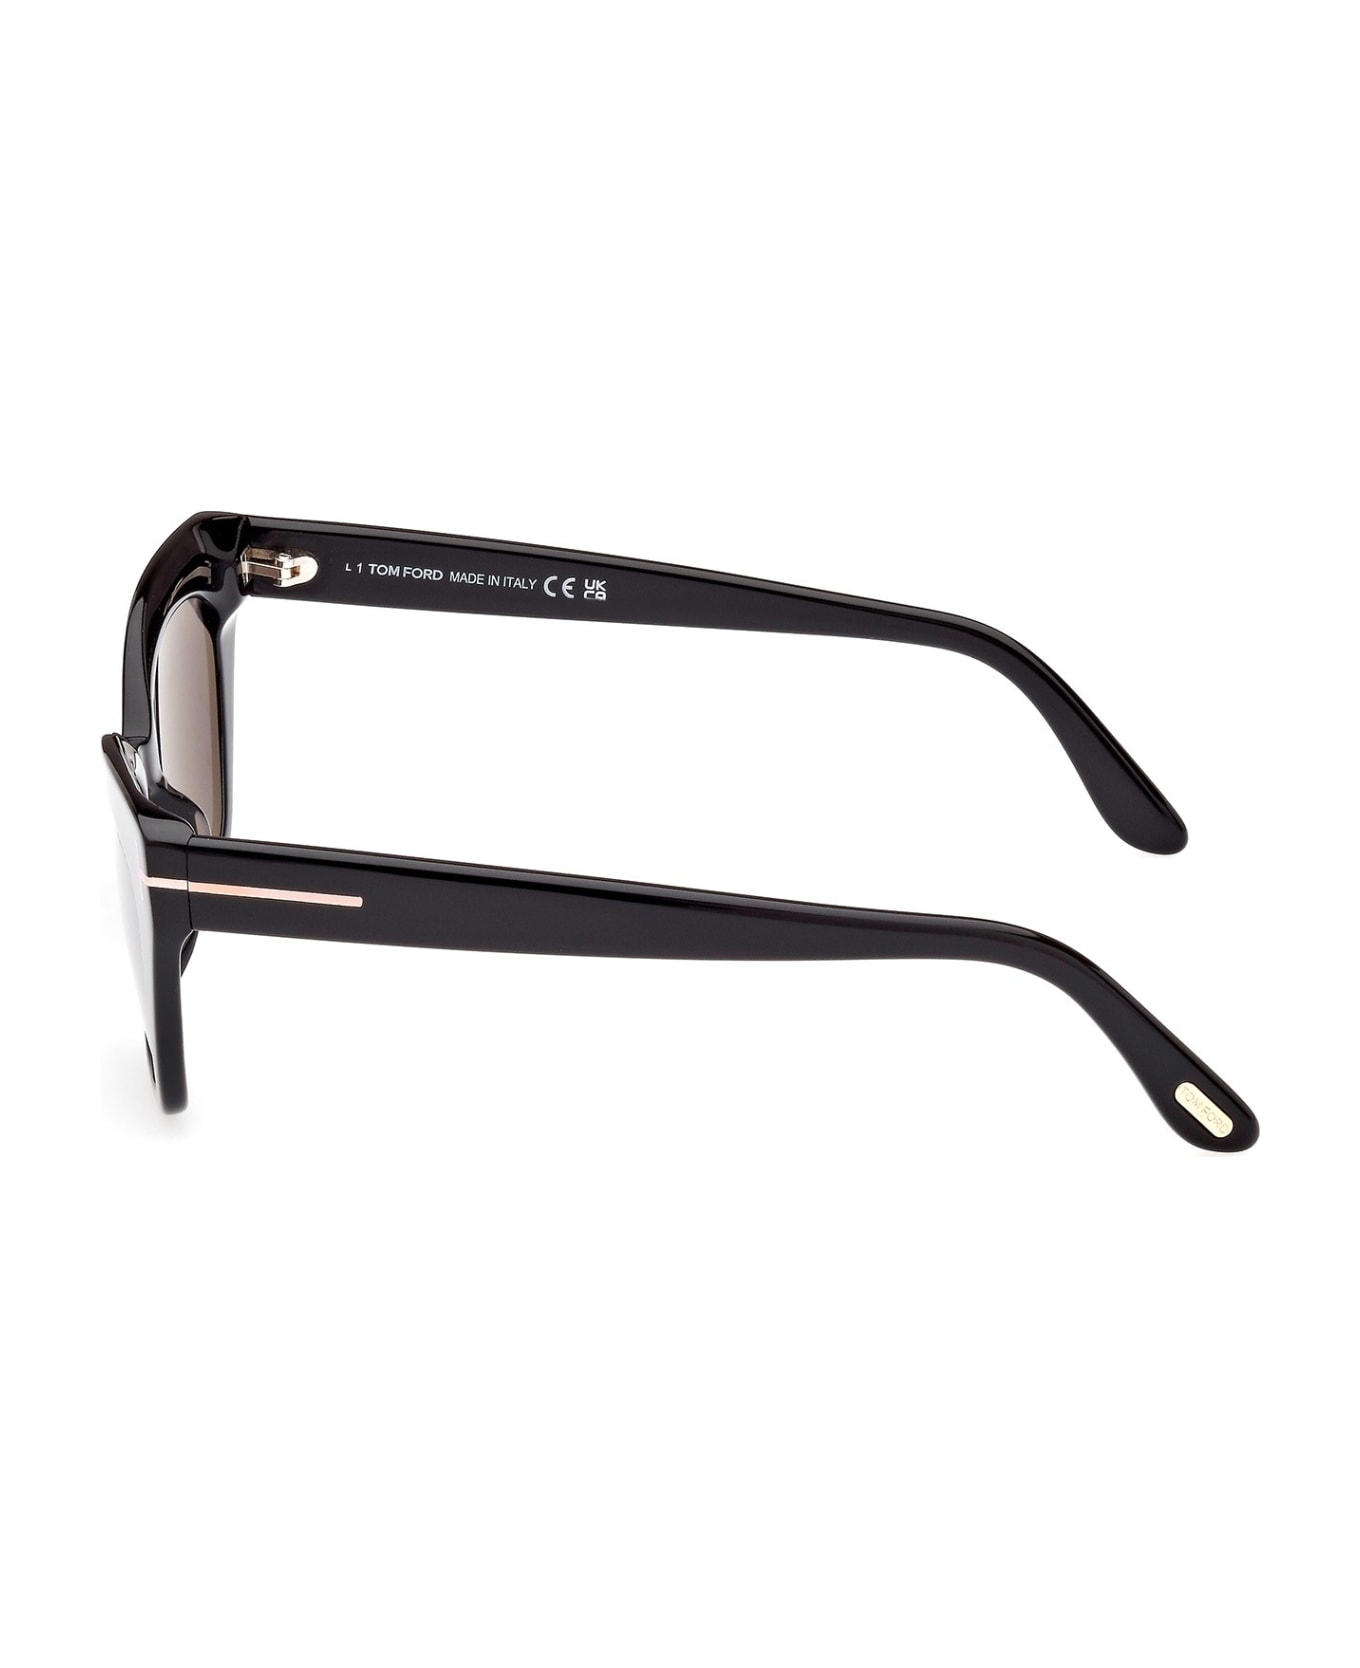 Tom Ford Eyewear Sunglasses - Nero/Nero